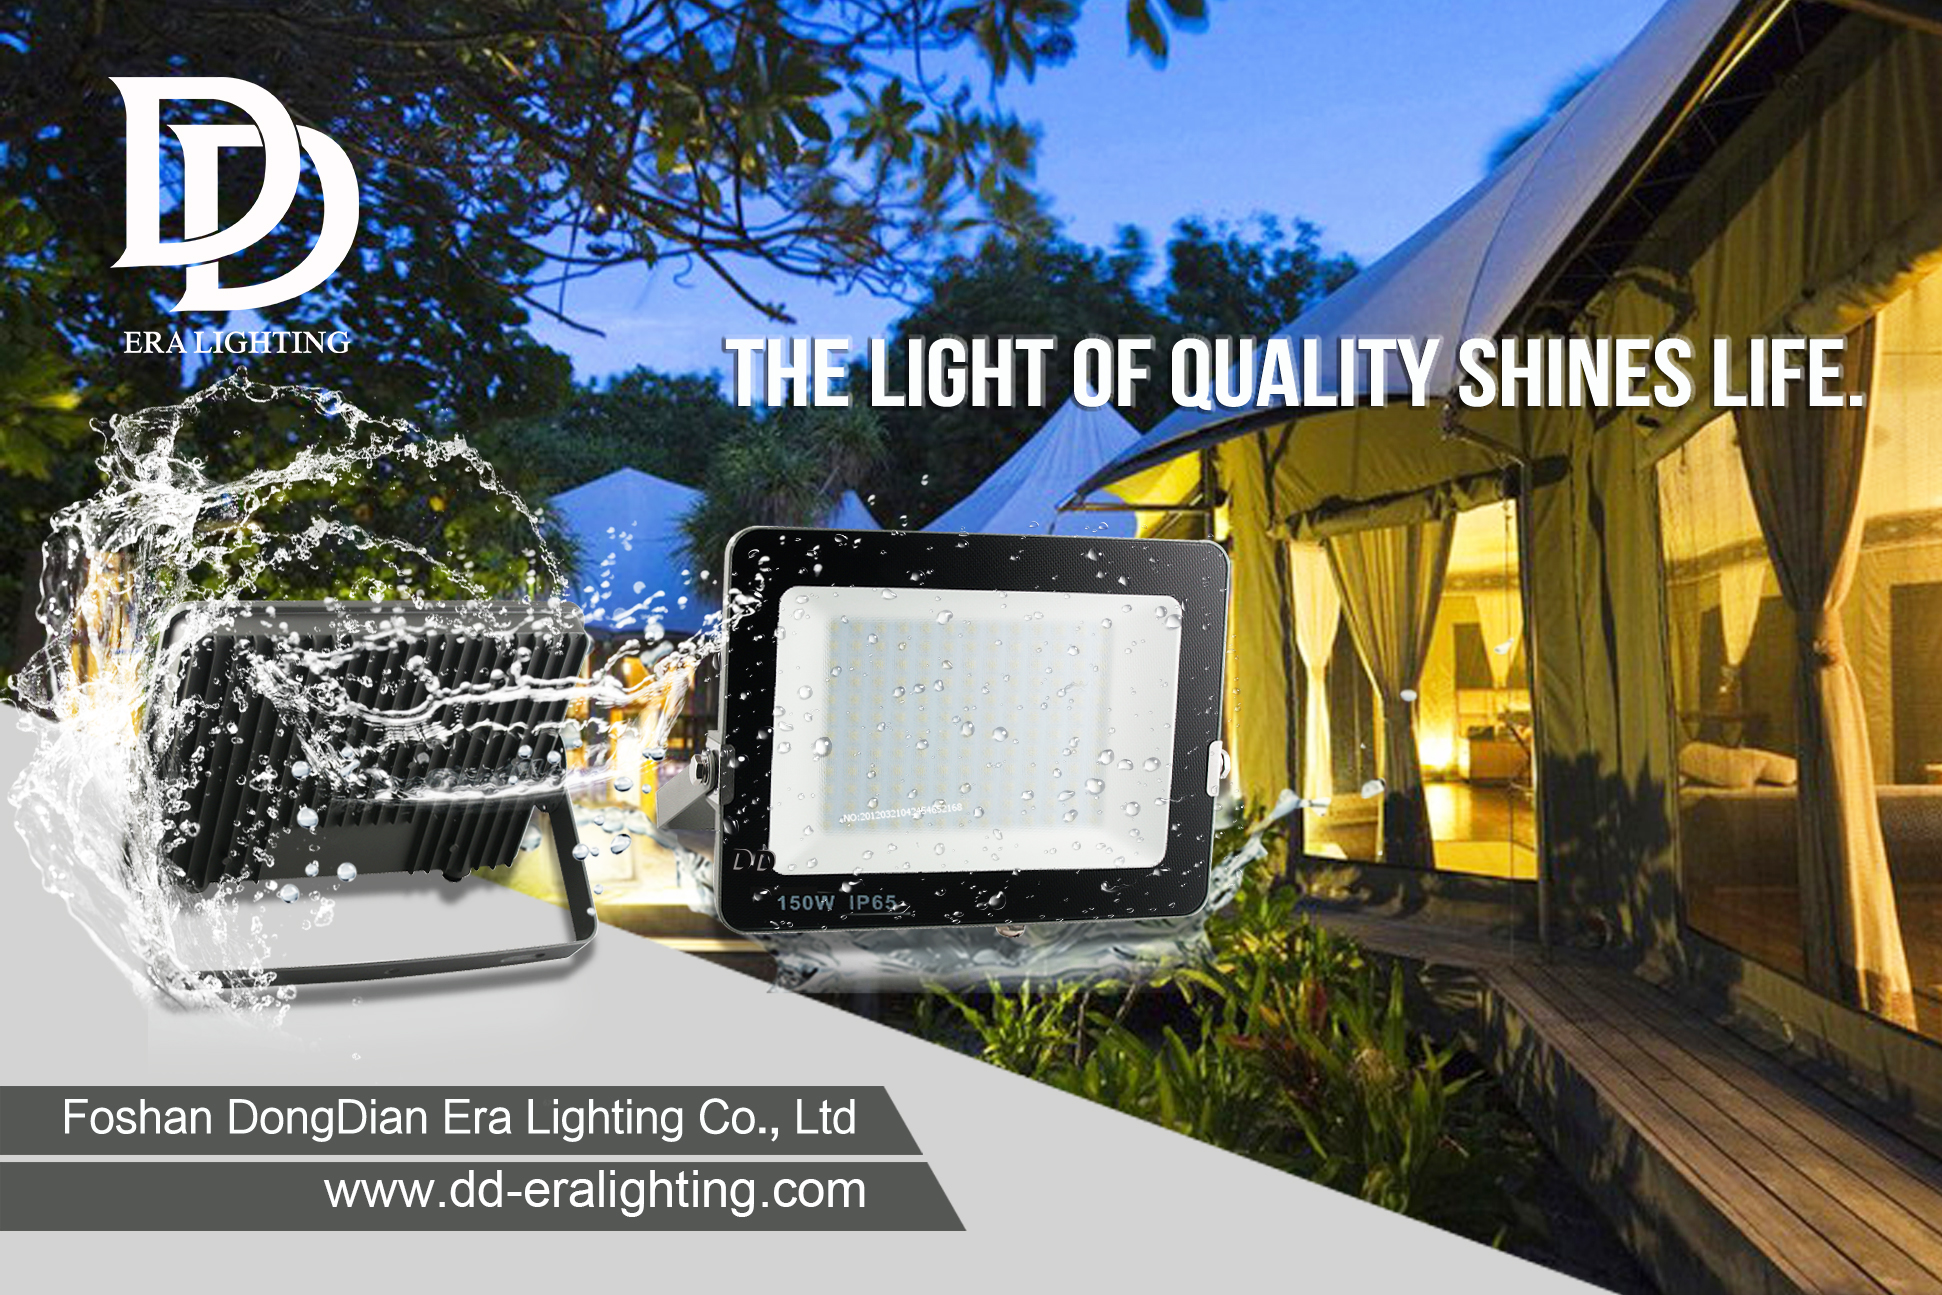 Luz LED | Ring amplía su iluminación inteligente con bombillas solares e interiores